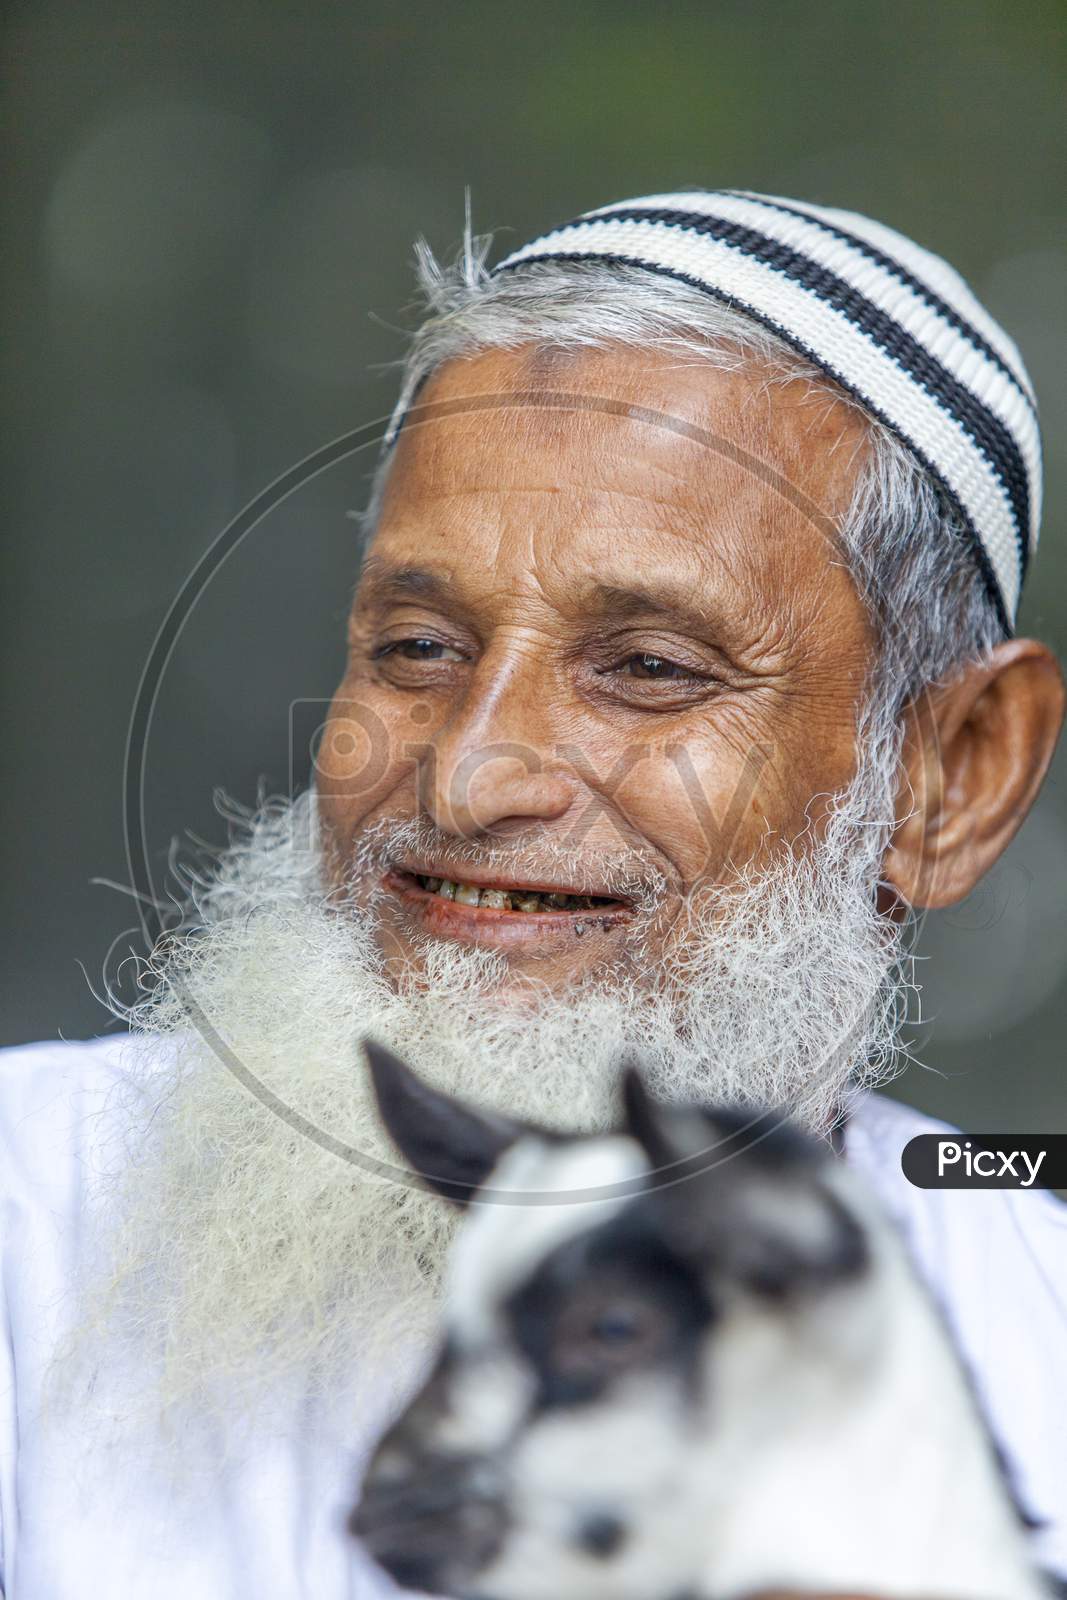 Bangladesh – January 06, 2014: An Older Man Are Holding A Yeanling And Smiling At Ranisankail, Thakurgaon.